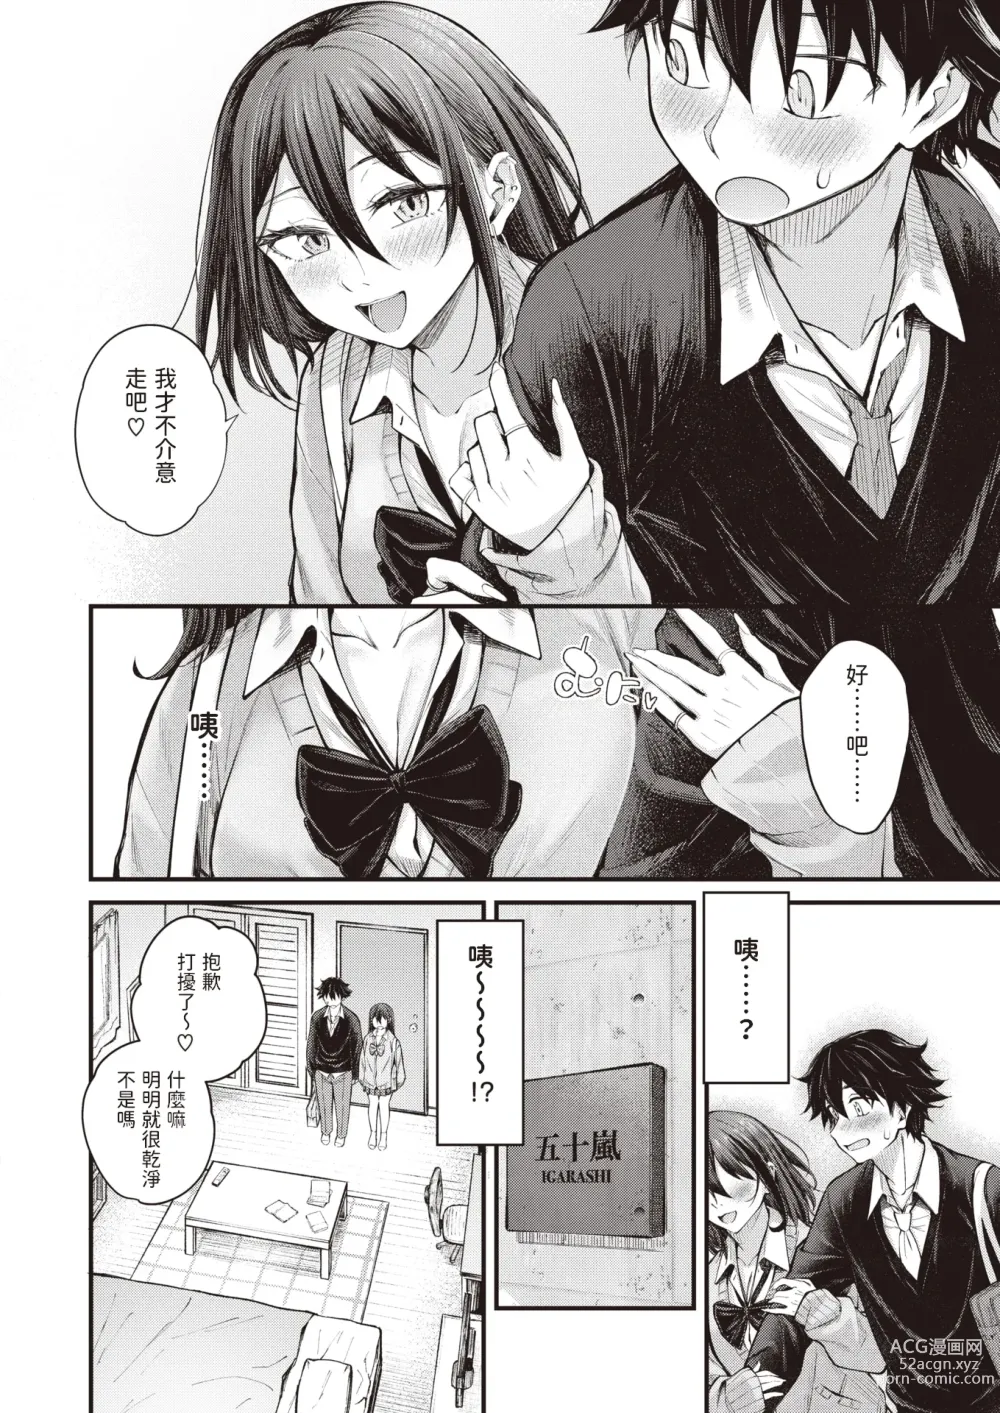 Page 8 of manga Arinomama no Kimi de Ite